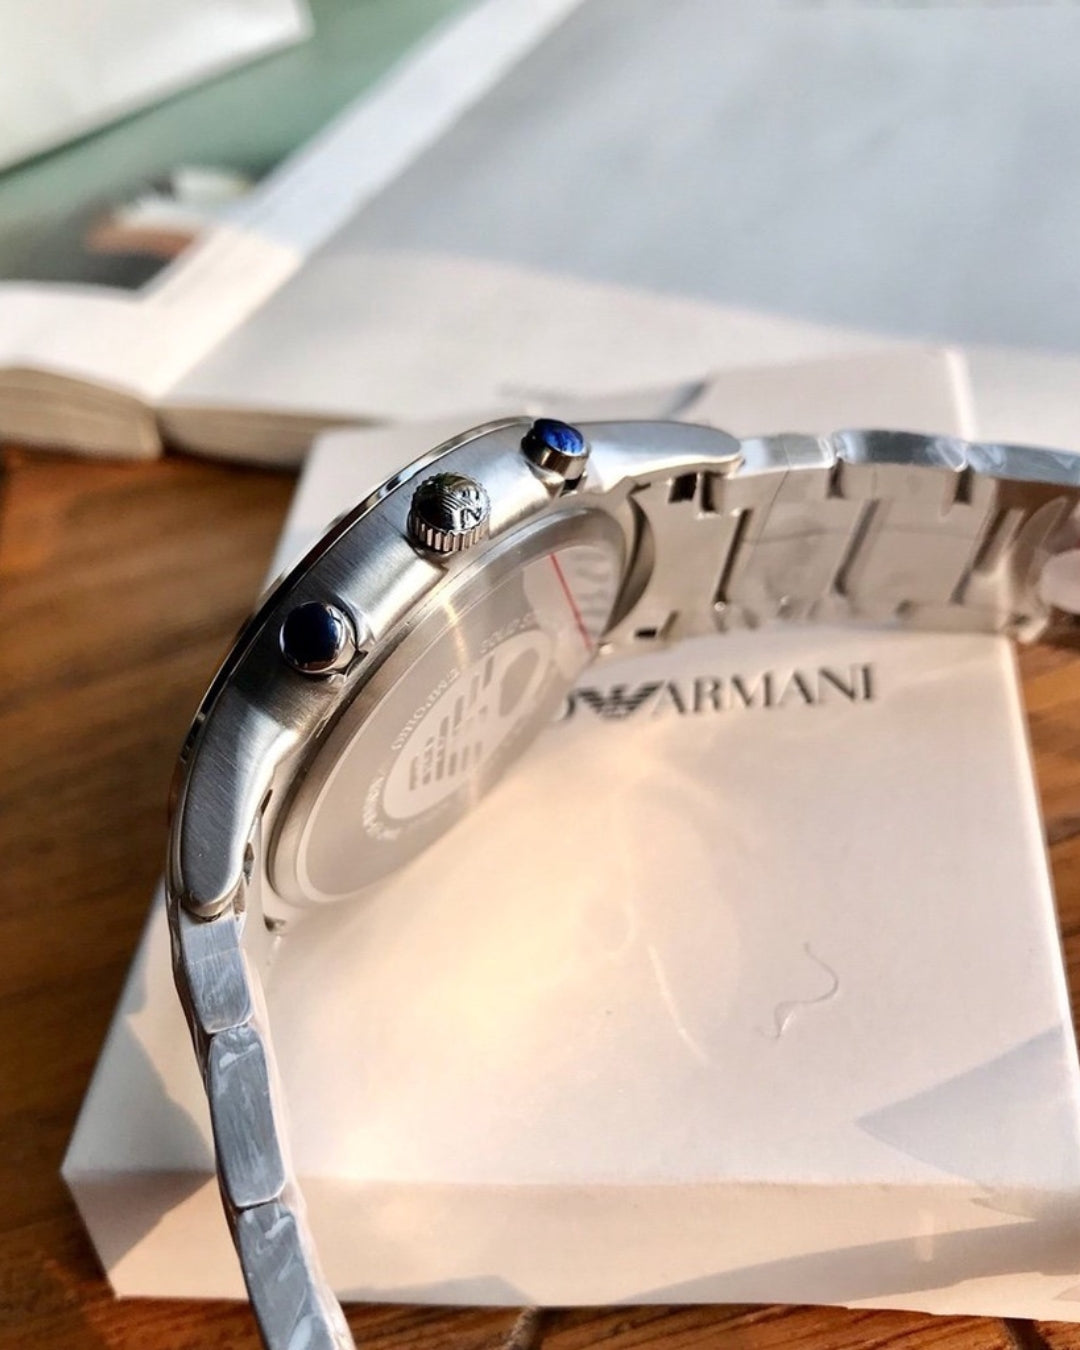 Armani AR2448 - Chronograph Watch